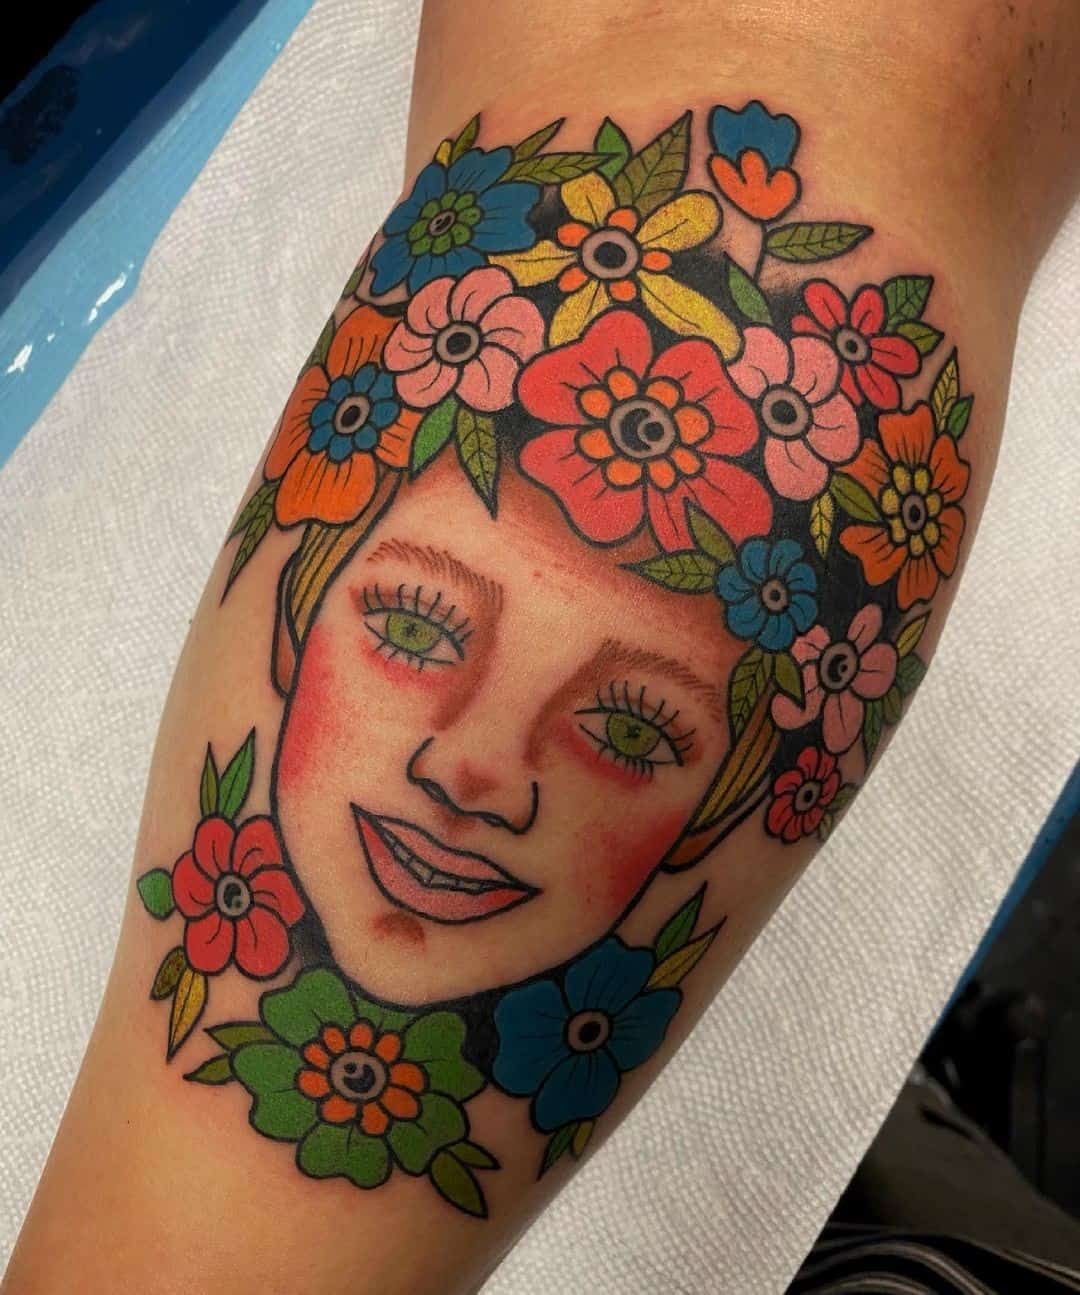 Tatuaje en la pantorrilla, amante de las flores, chica colorida